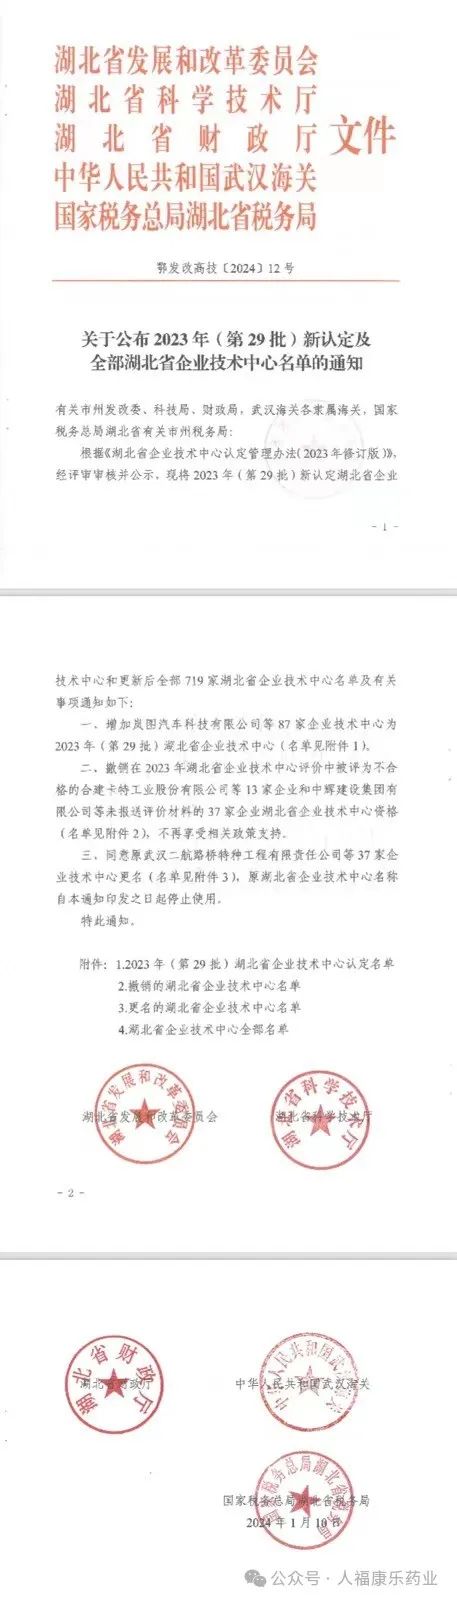 喜報|武漢康樂藥業股份有限公司成功獲批湖北省企業技術中心!